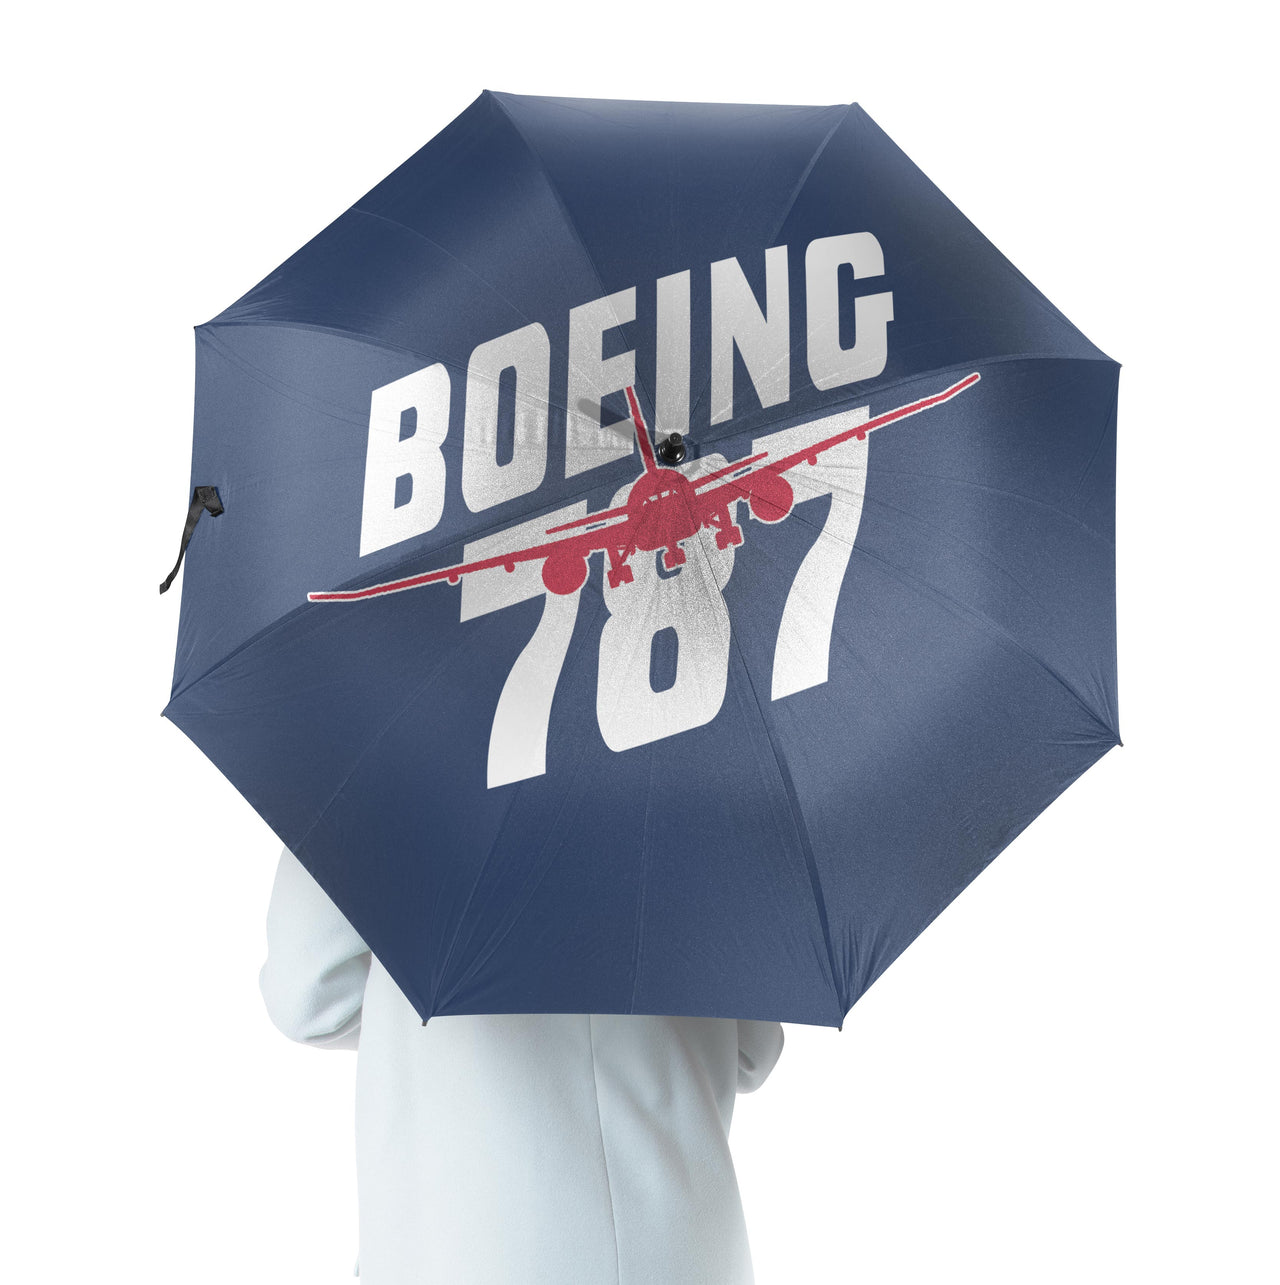 Amazing Boeing 787 Designed Umbrella